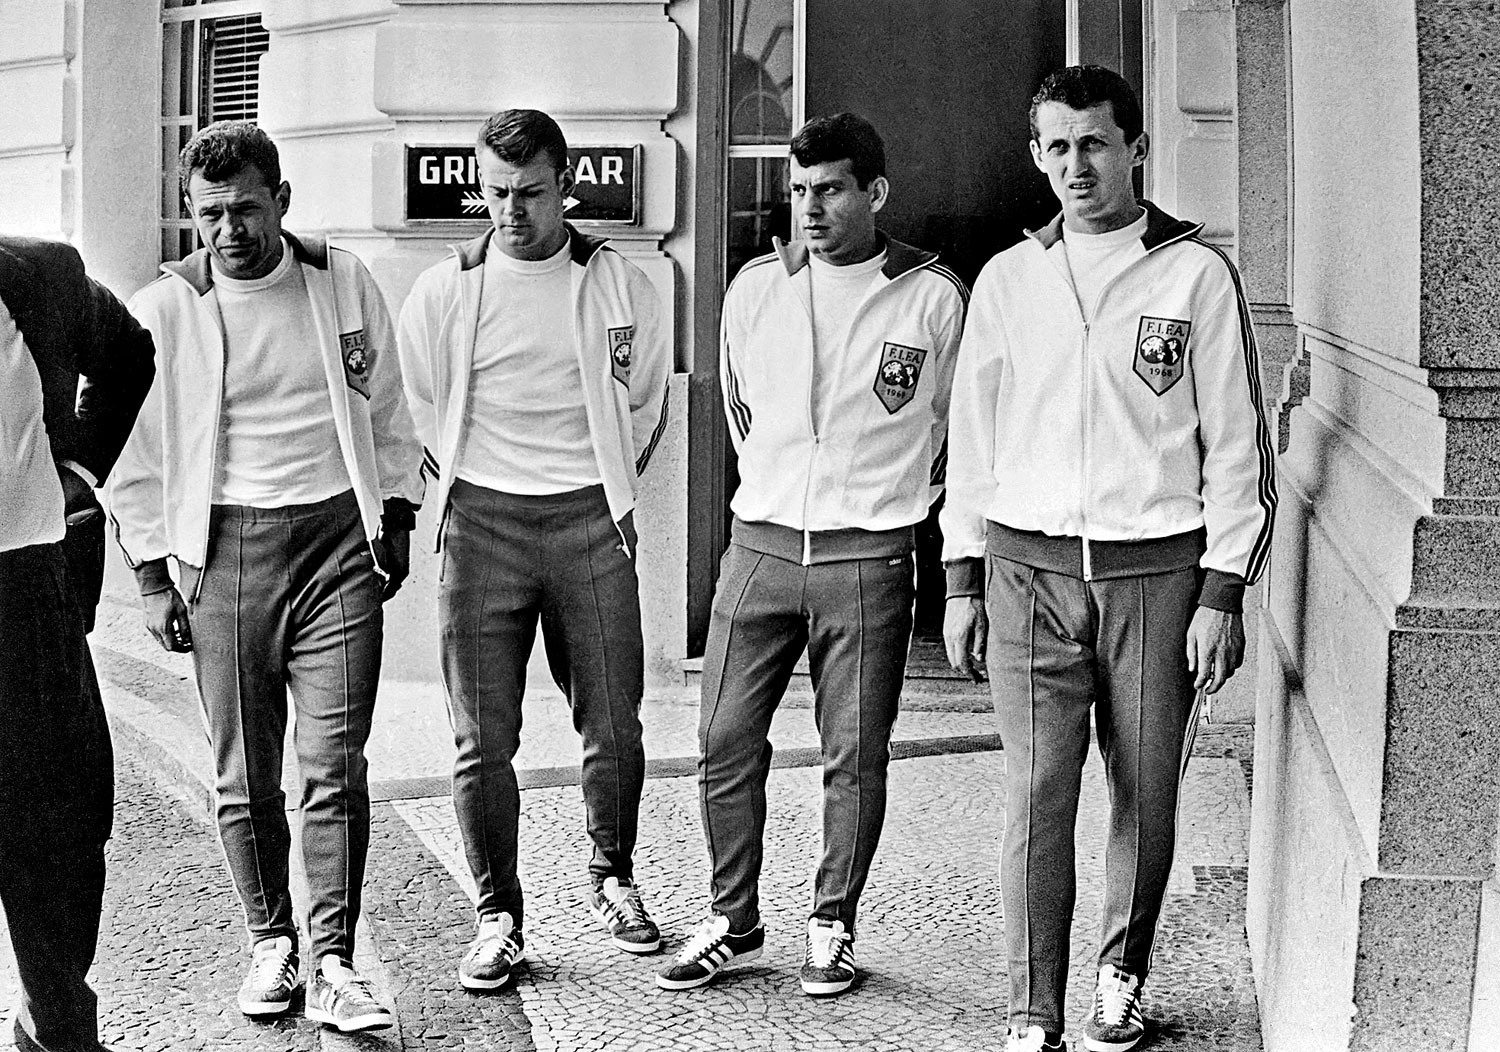 Három évvel korábban négy magyar labdarúgó járt Rióban: az 1968-as Brazília–Világválogatott gálamérkőzésen Novák Dezső, Szűcs Lajos, Farkas János és Albert Flórián adta az All Star-keret negyedét